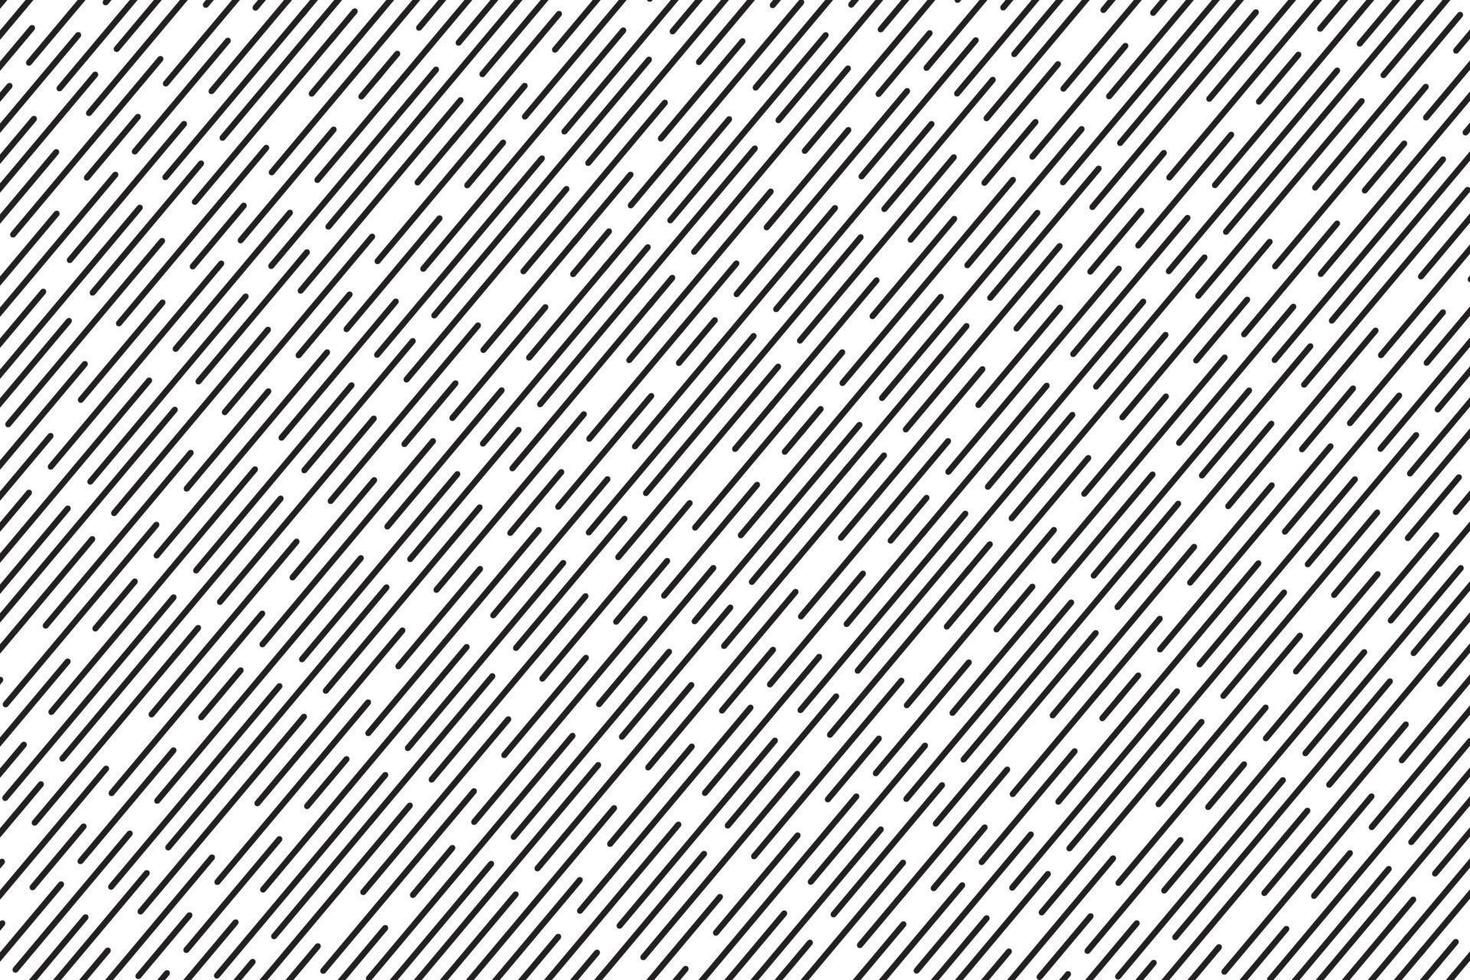 abstracte zwart-witte zigzagpatroonachtergrond vector